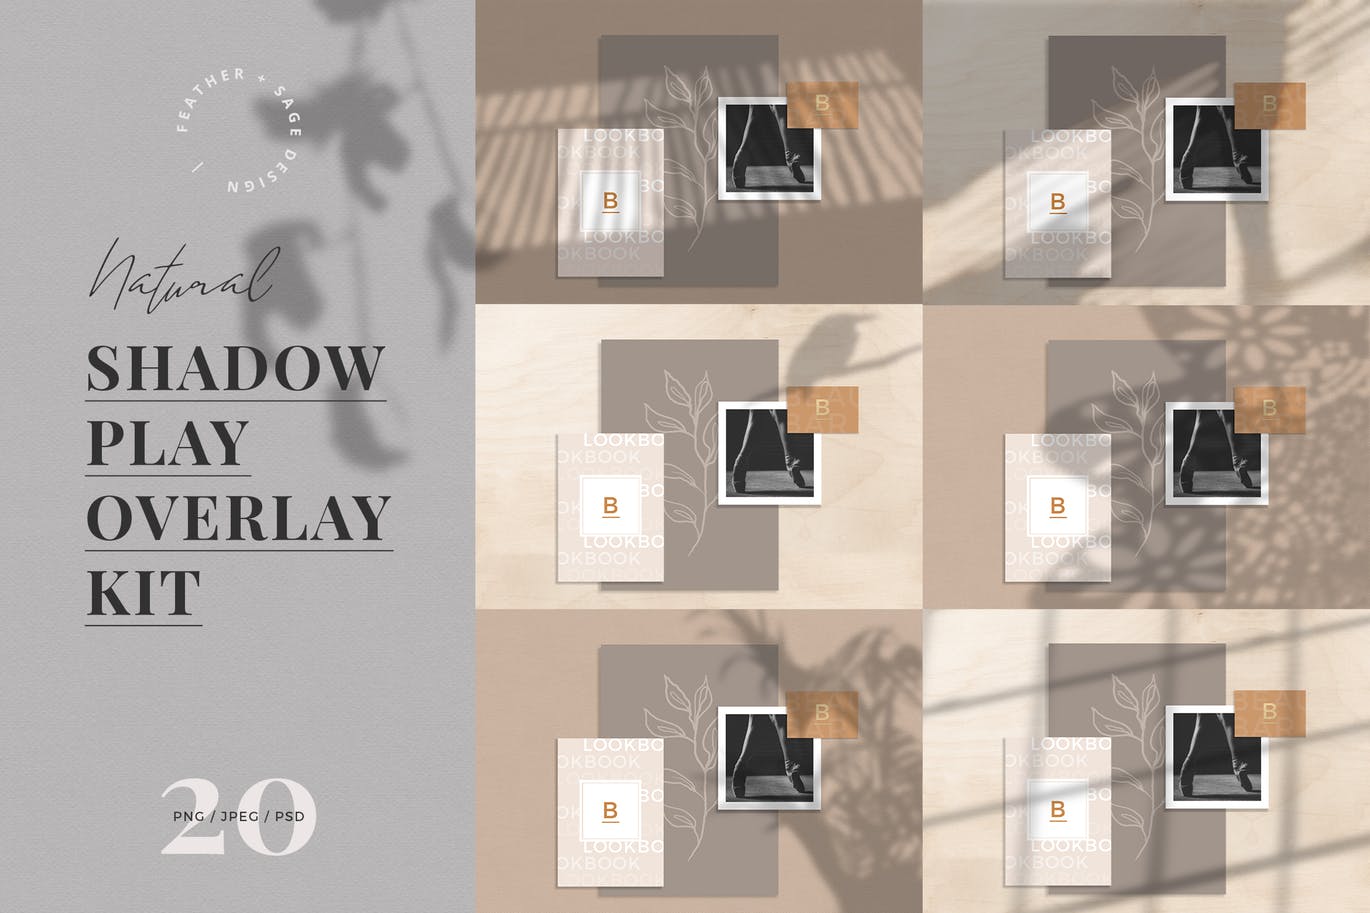 自然植物阴影高清蚂蚁素材精选背景设计素材包 Natural Shadow Play Overlay Kit插图